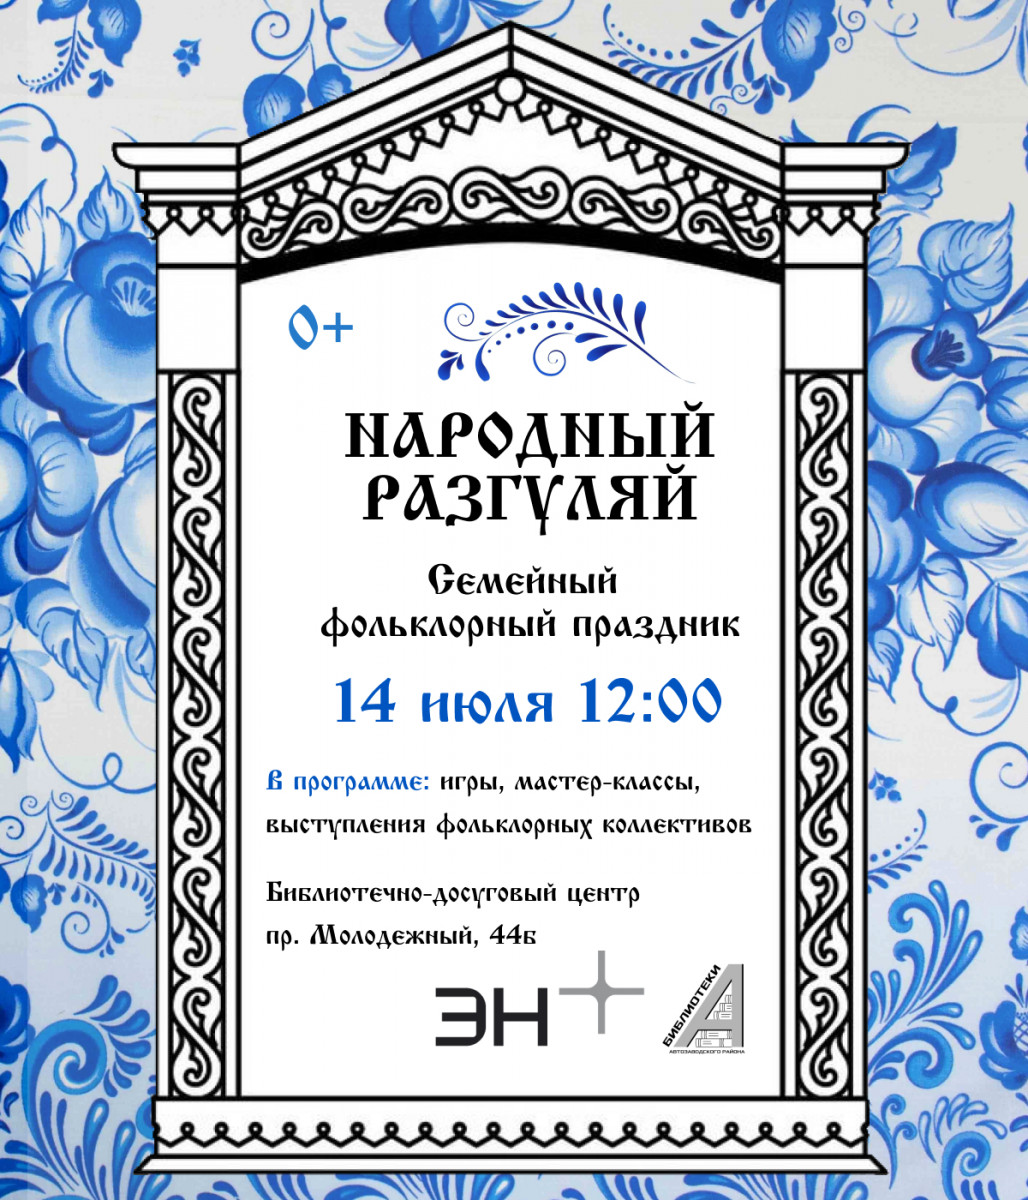 Фольклорный праздник «Народный разгуляй» пройдет в Нижнем Новгороде 14 июля